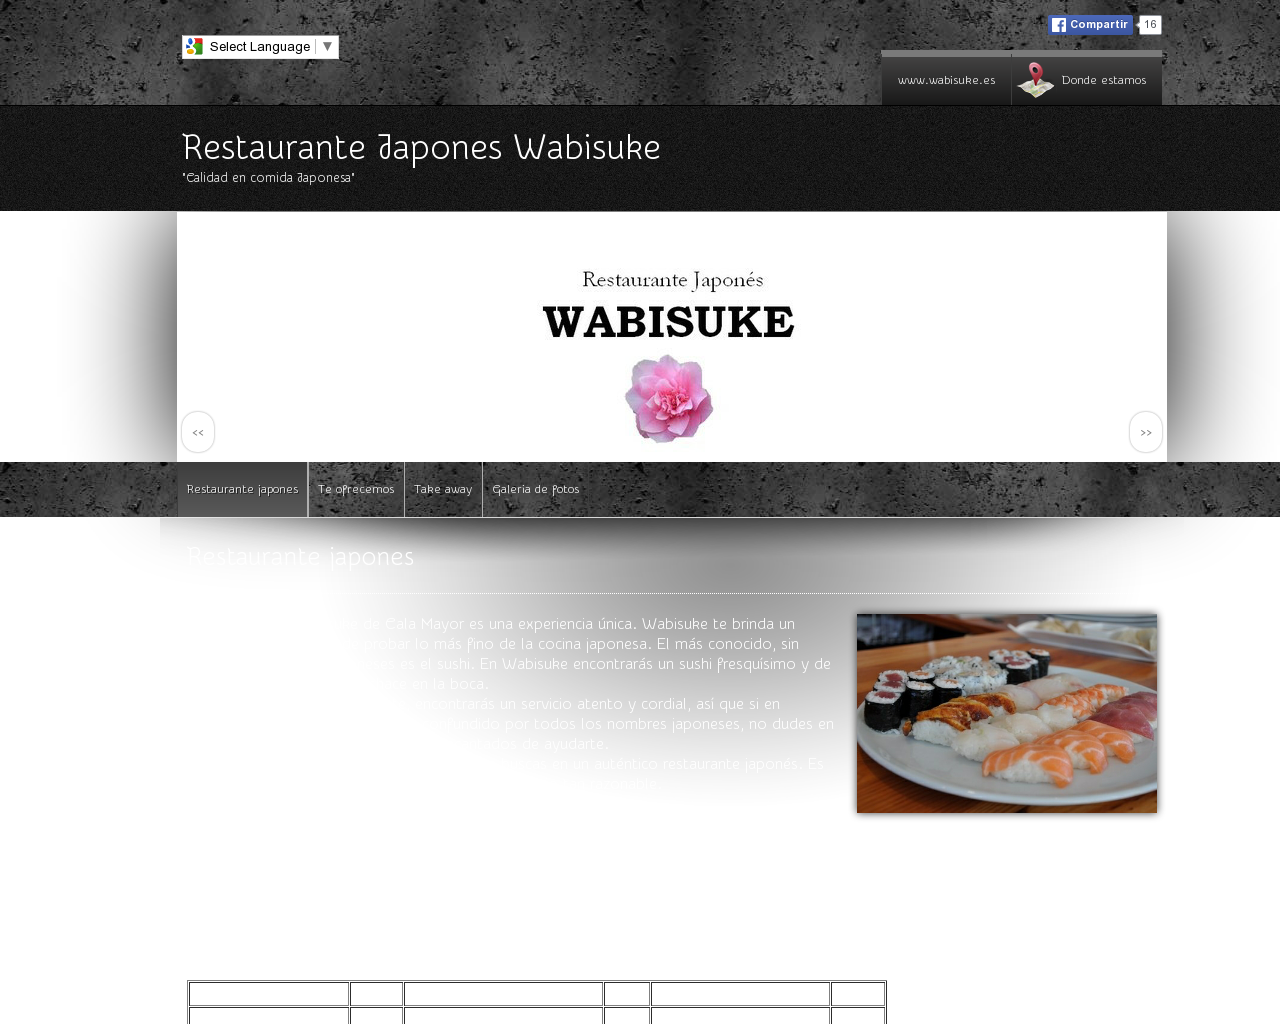 El sitio de la imagen wabisuke.es en 1280x1024